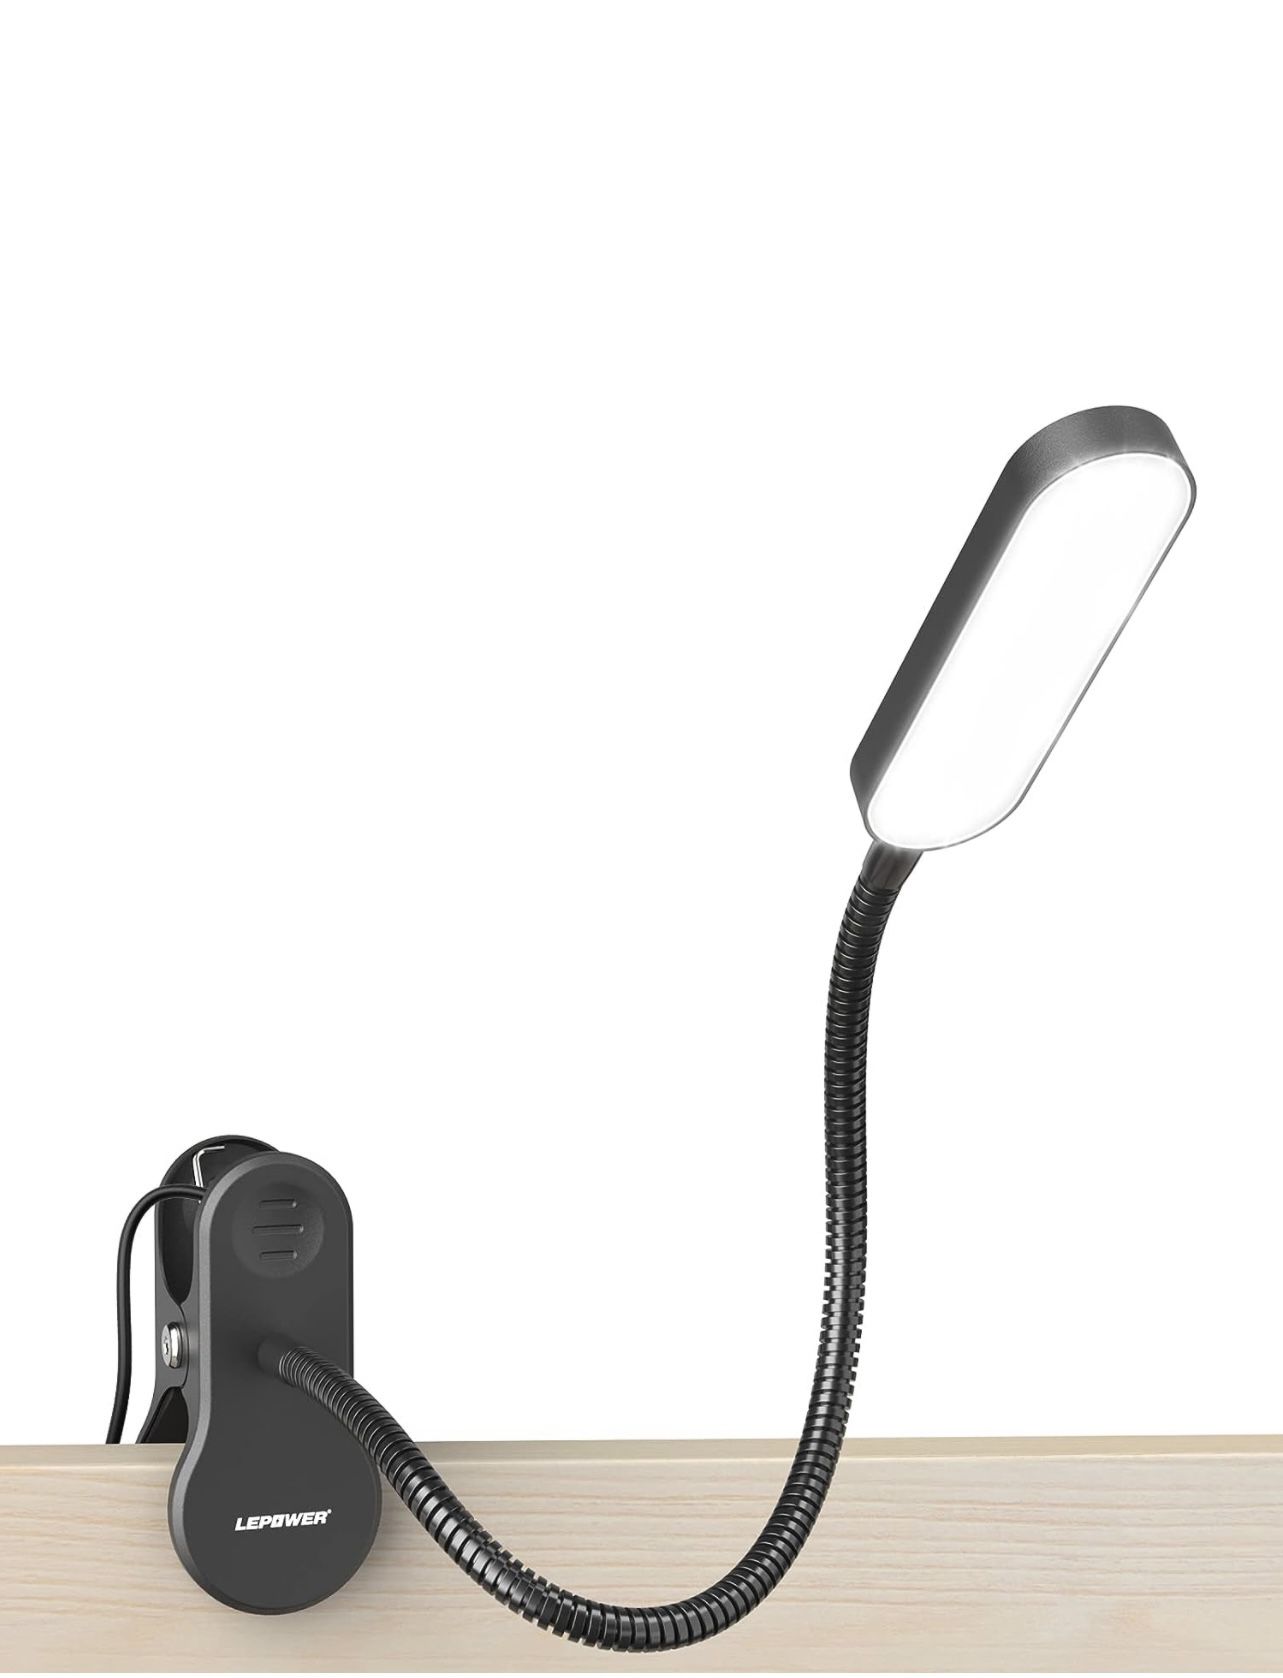 LEPOWER Clip on Light, Eye-Caring Book Light for Reading in Bed, Desk, Headboard Lamp